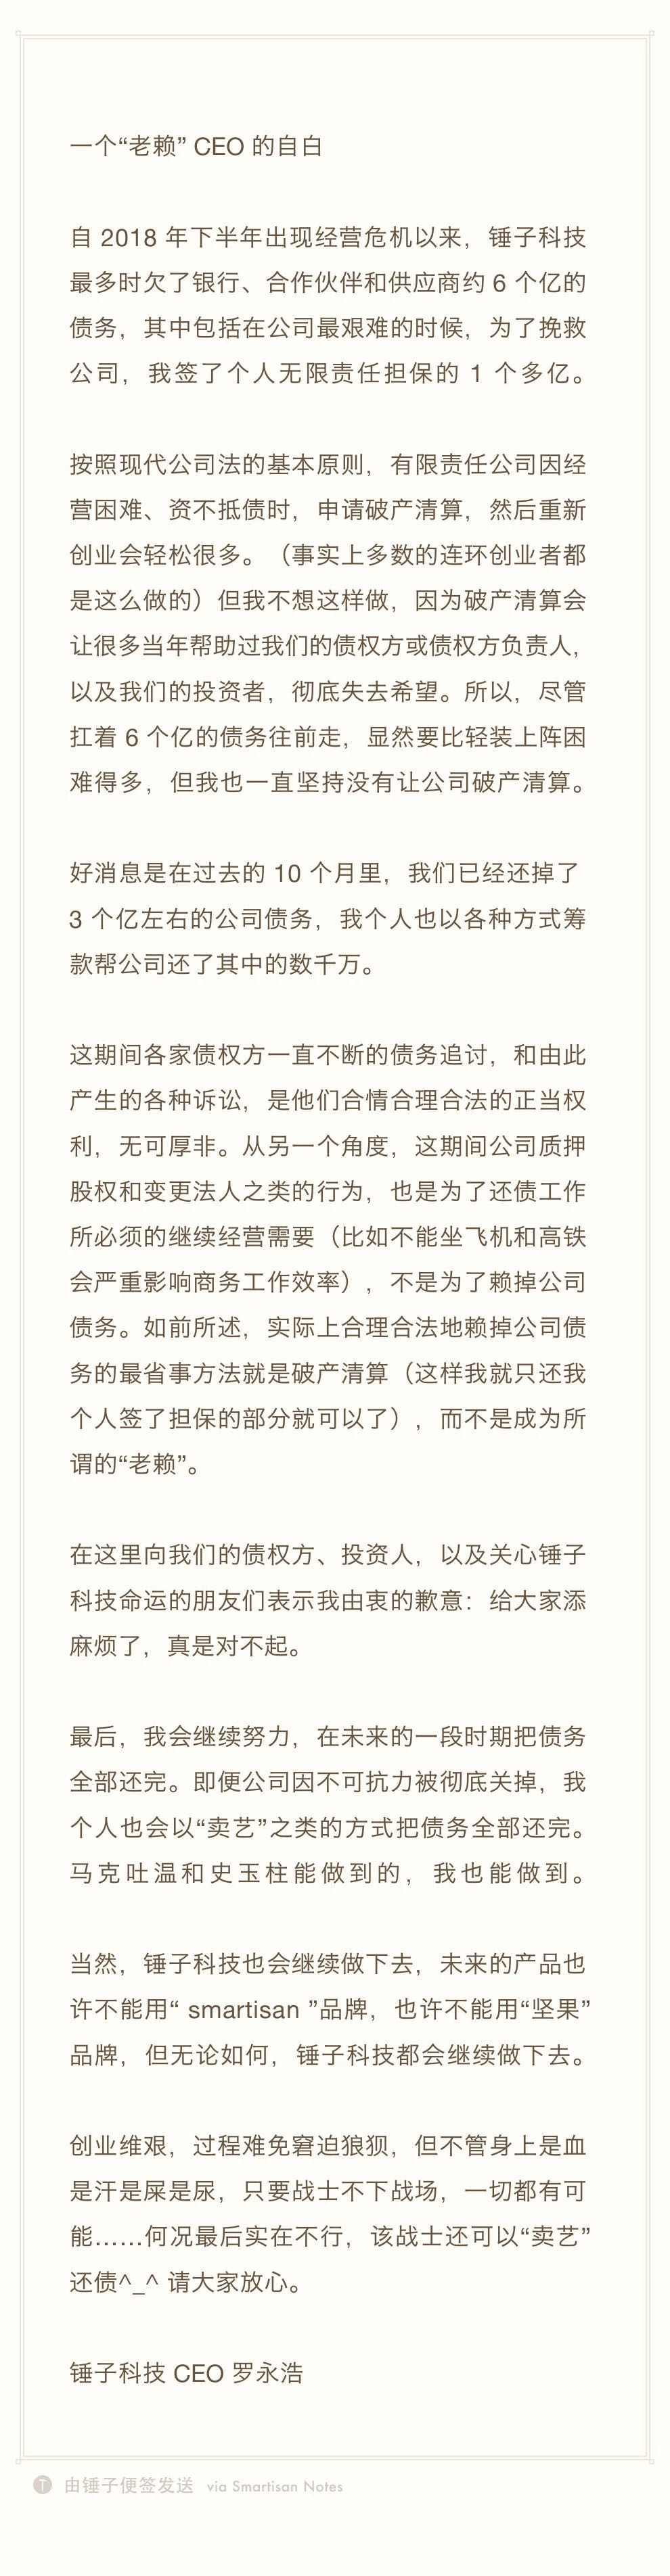 罗永浩因债务纠纷被列为老赖 发长文回应称将负责到底